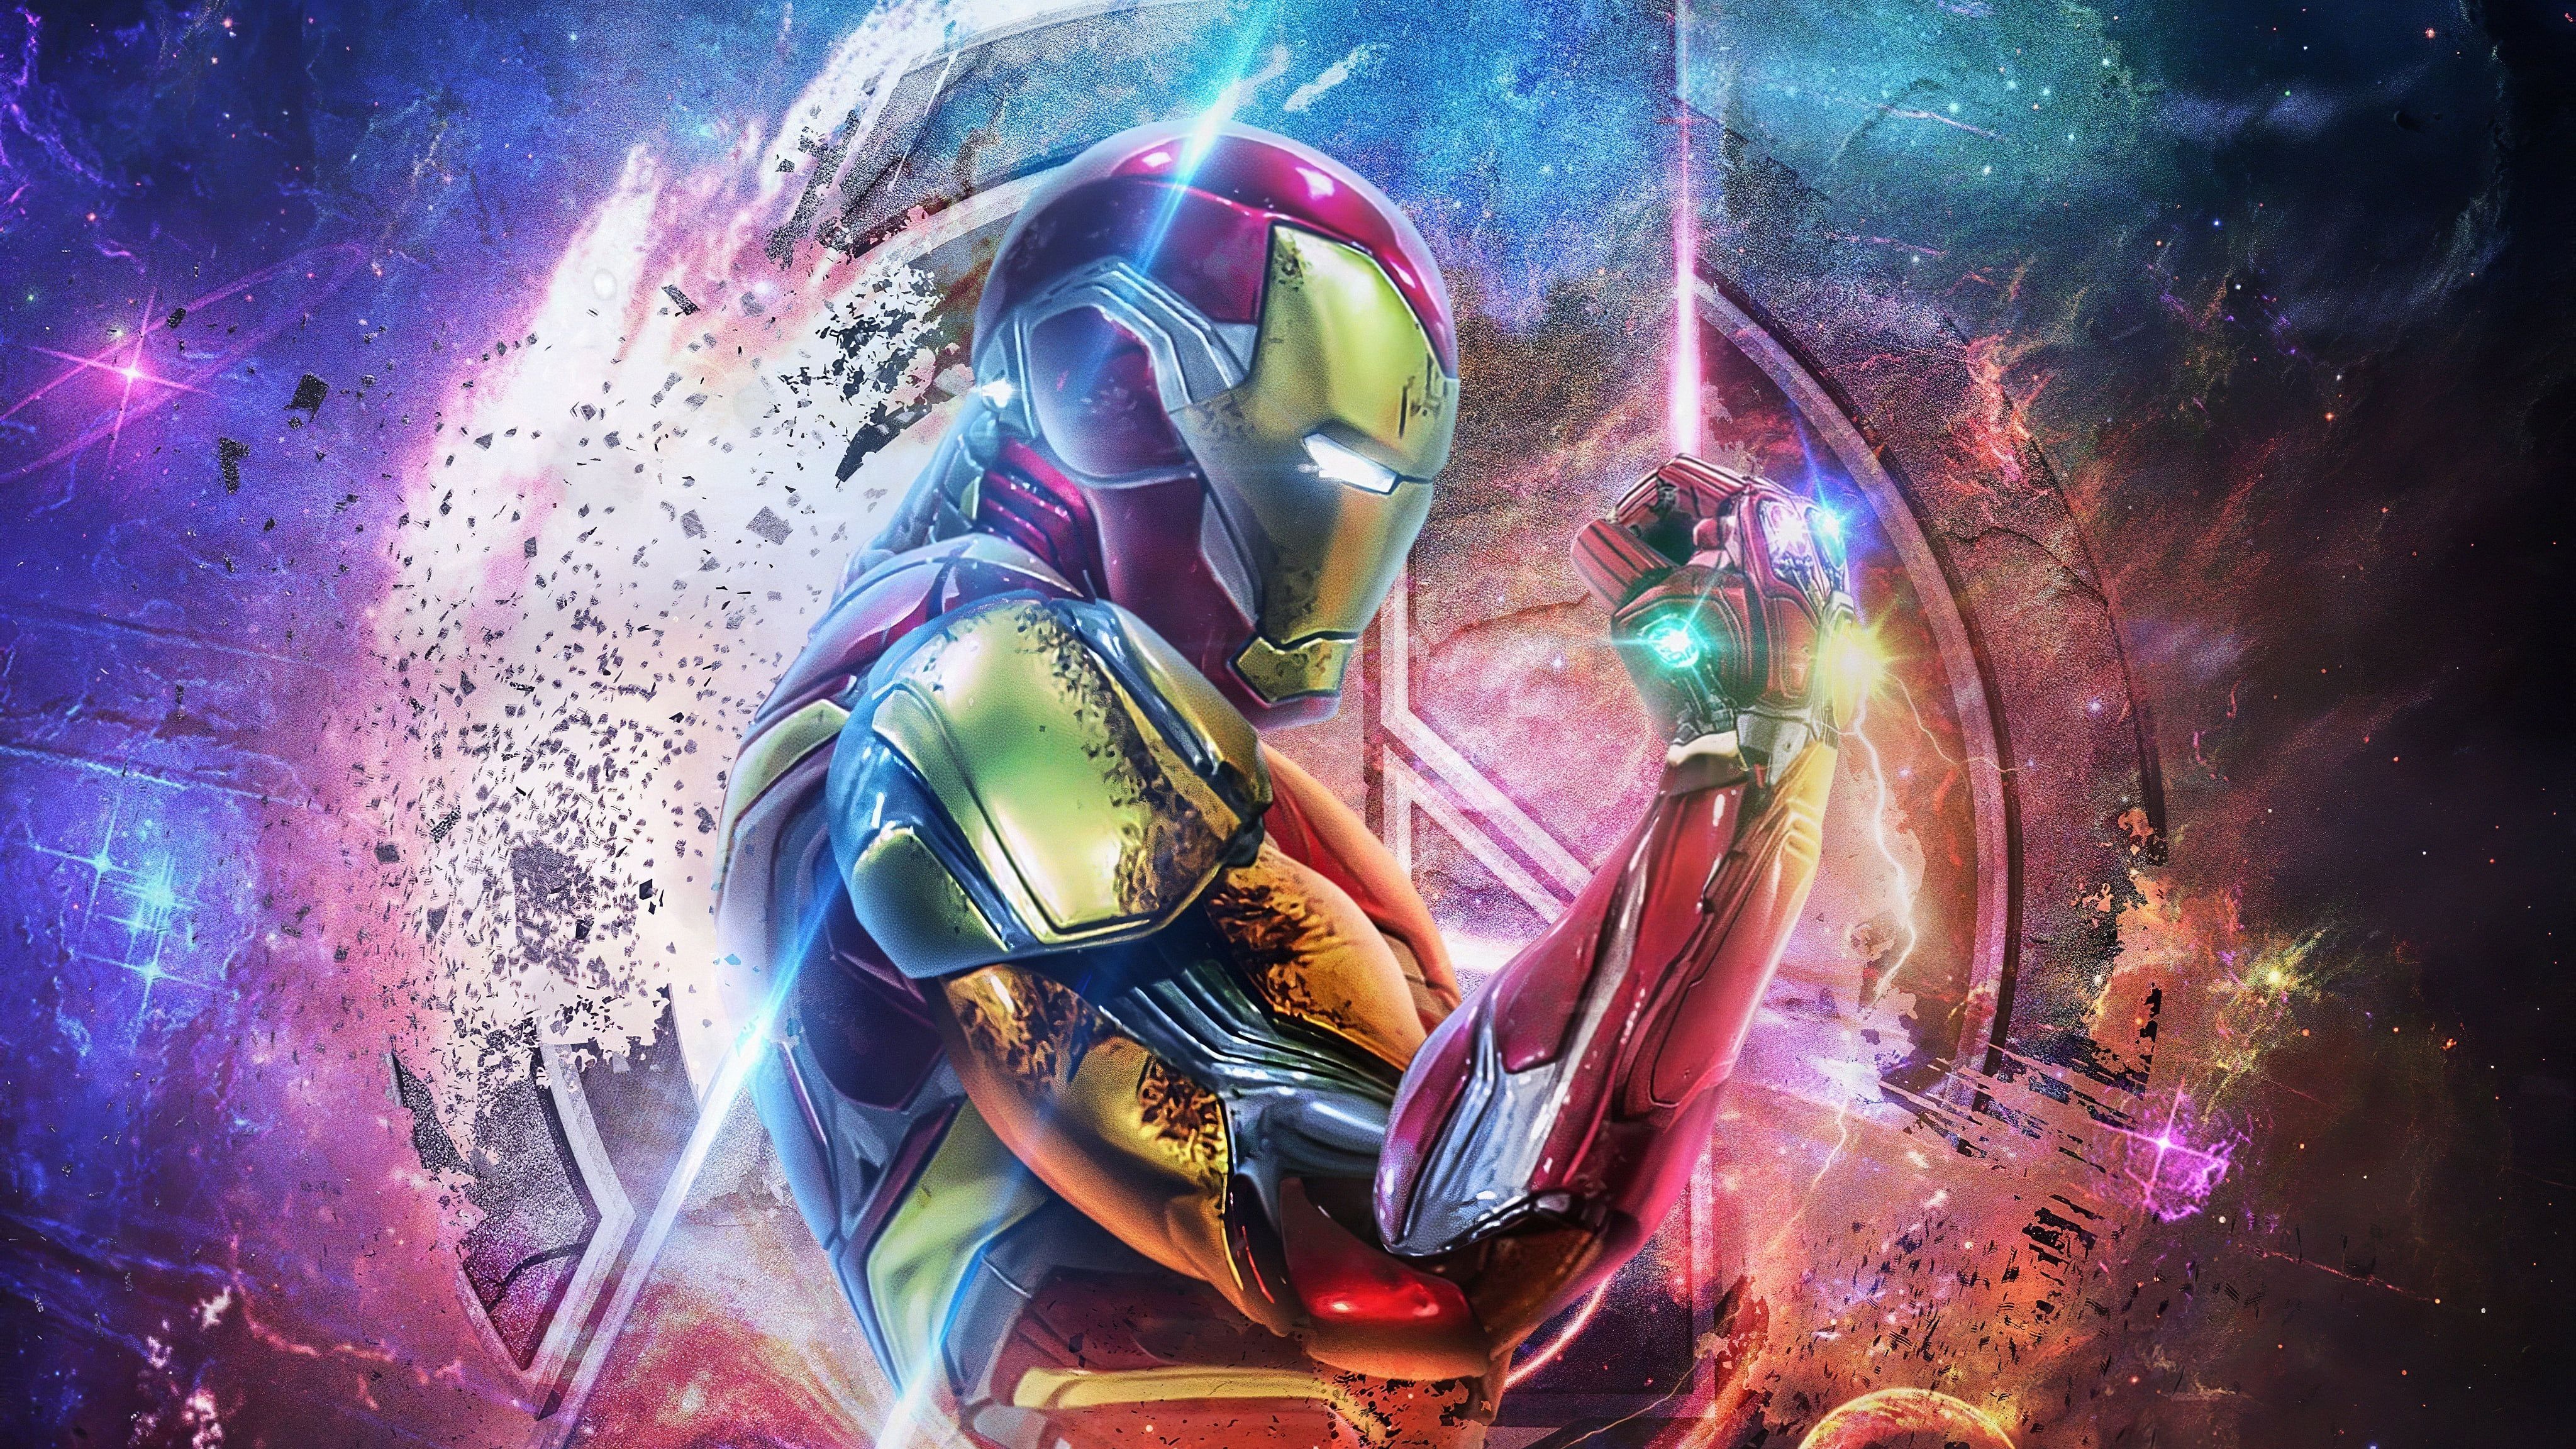 The Avengers Avengers Endgame Avengers EndGame Infinity Gauntlet Iron Man # 4K #wallpaper #hdwallpaper #desktop. Iron man wallpaper, Iron man avengers, Iron man